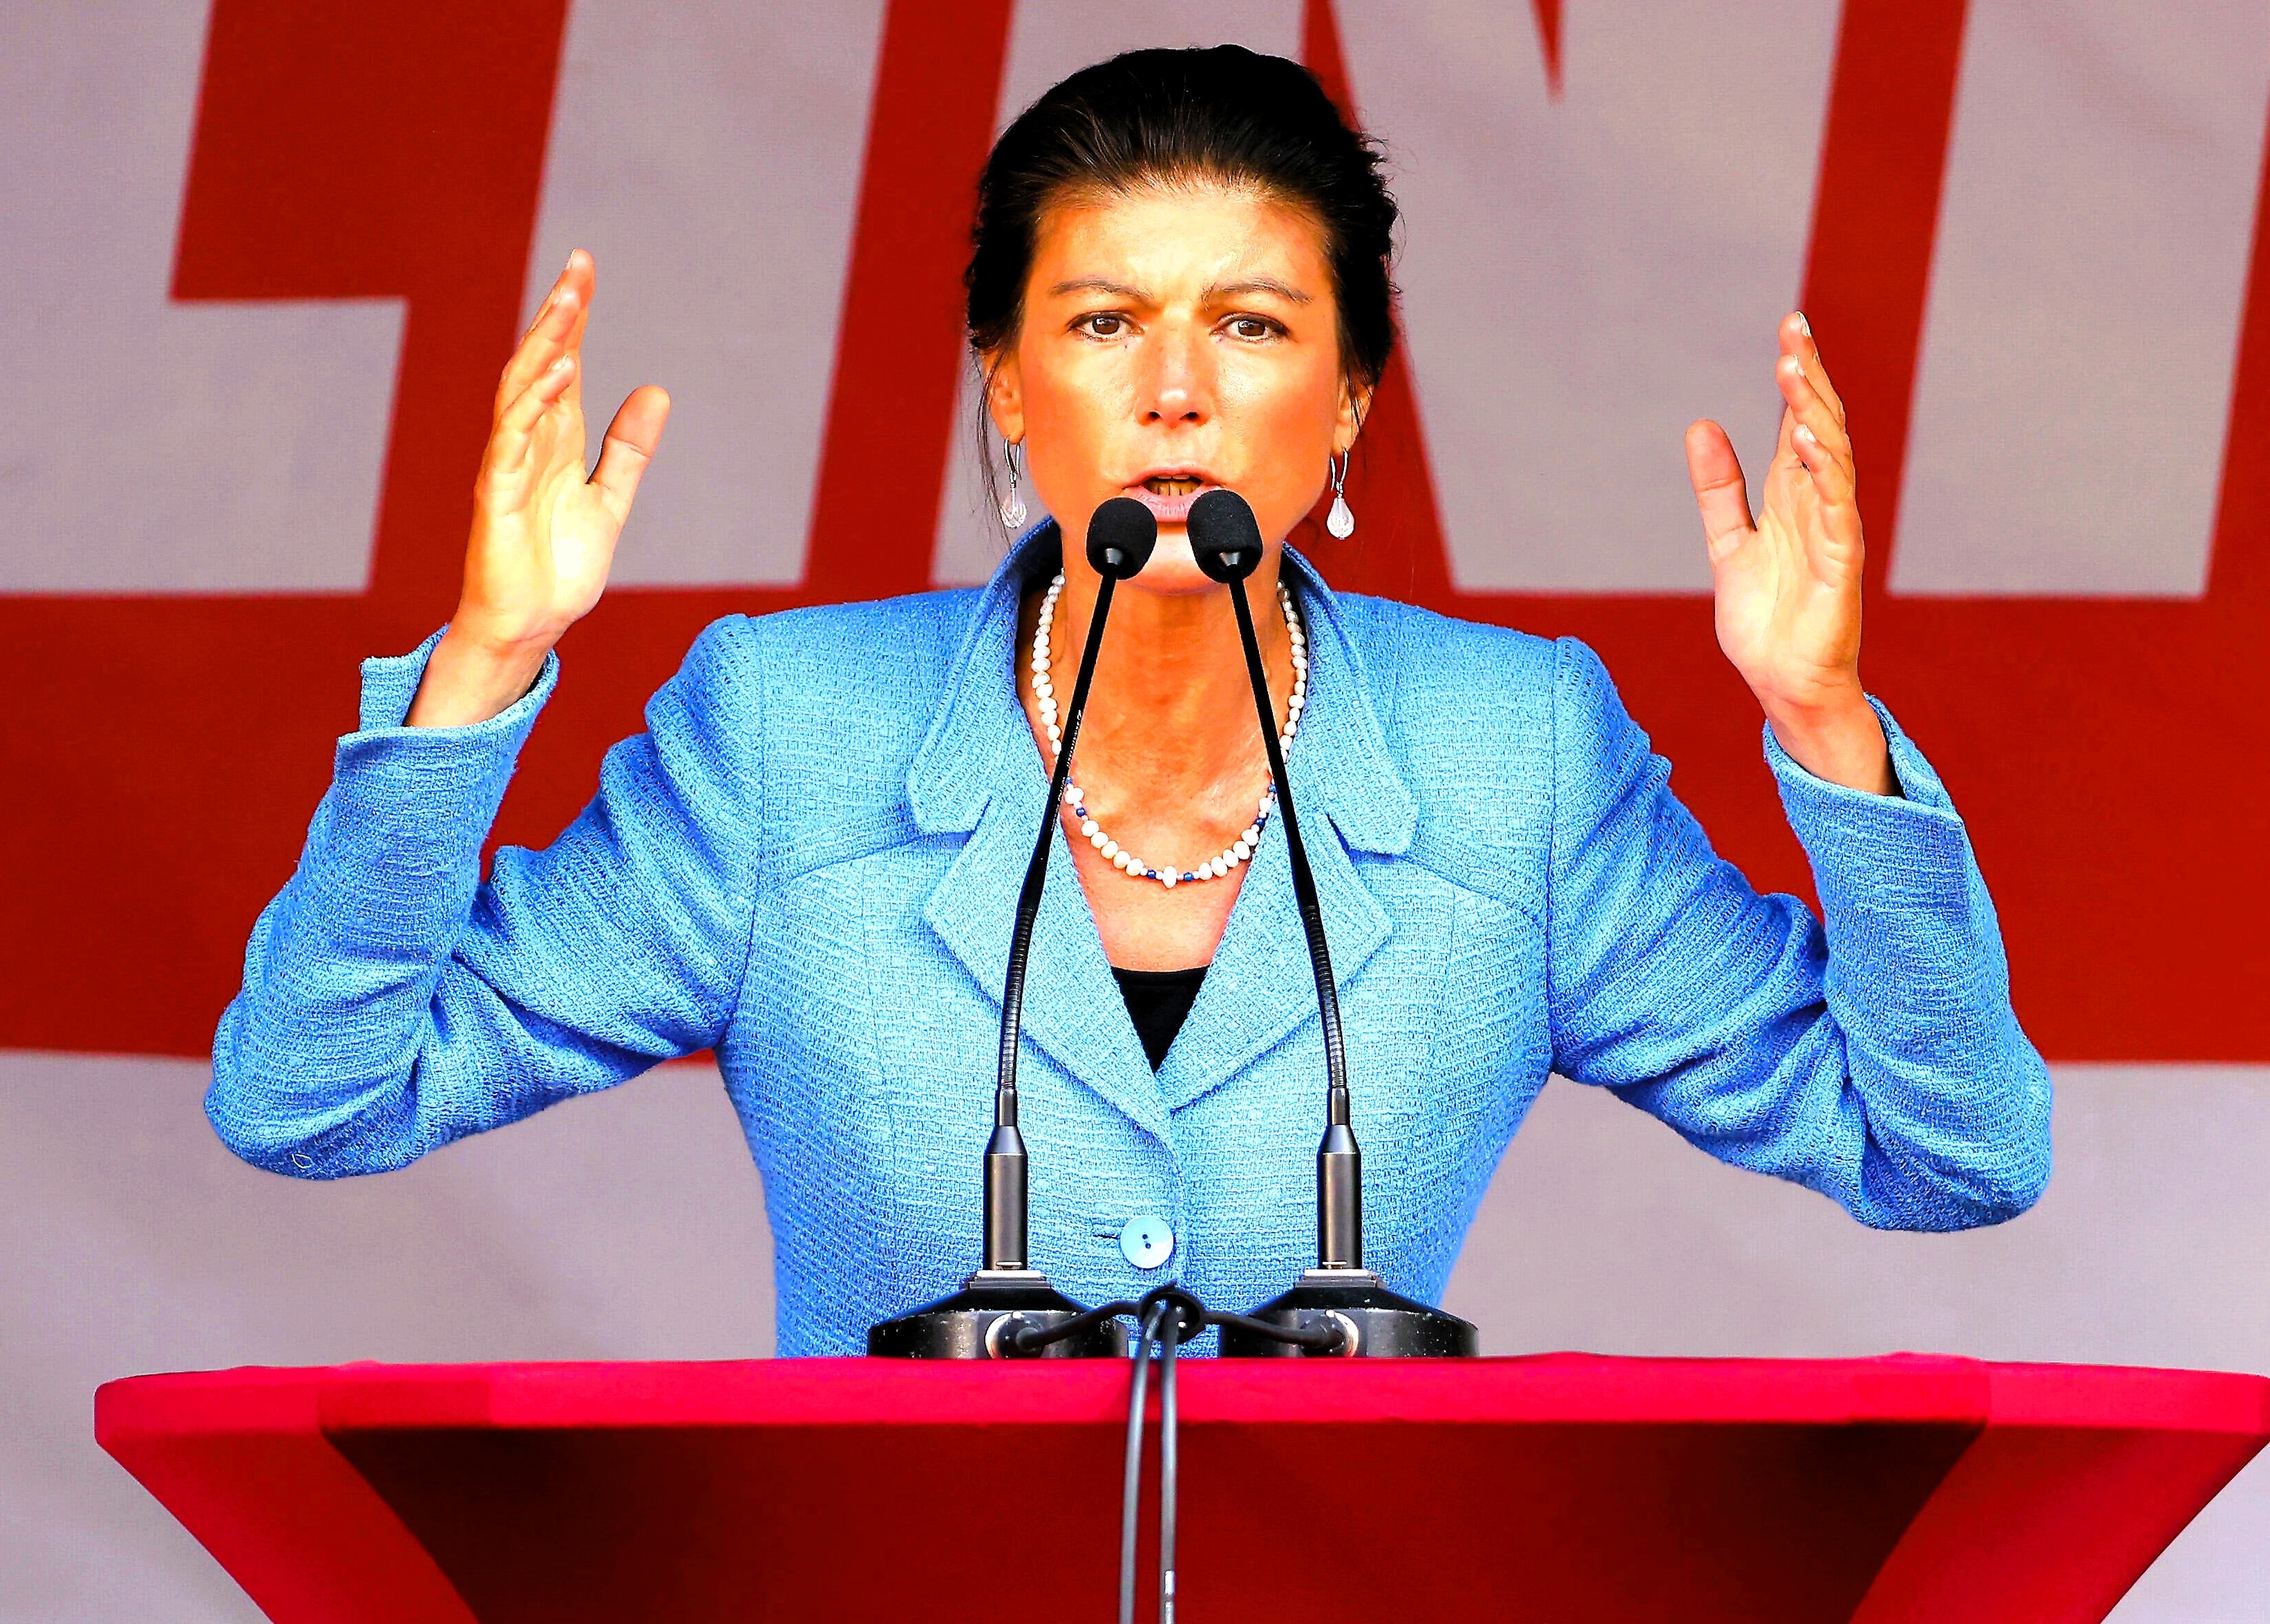 Rekordwert! Umfrage-Sensation für Partei von Sahra Wagenknecht - BSW erreicht bundesweit hohe Zahlen